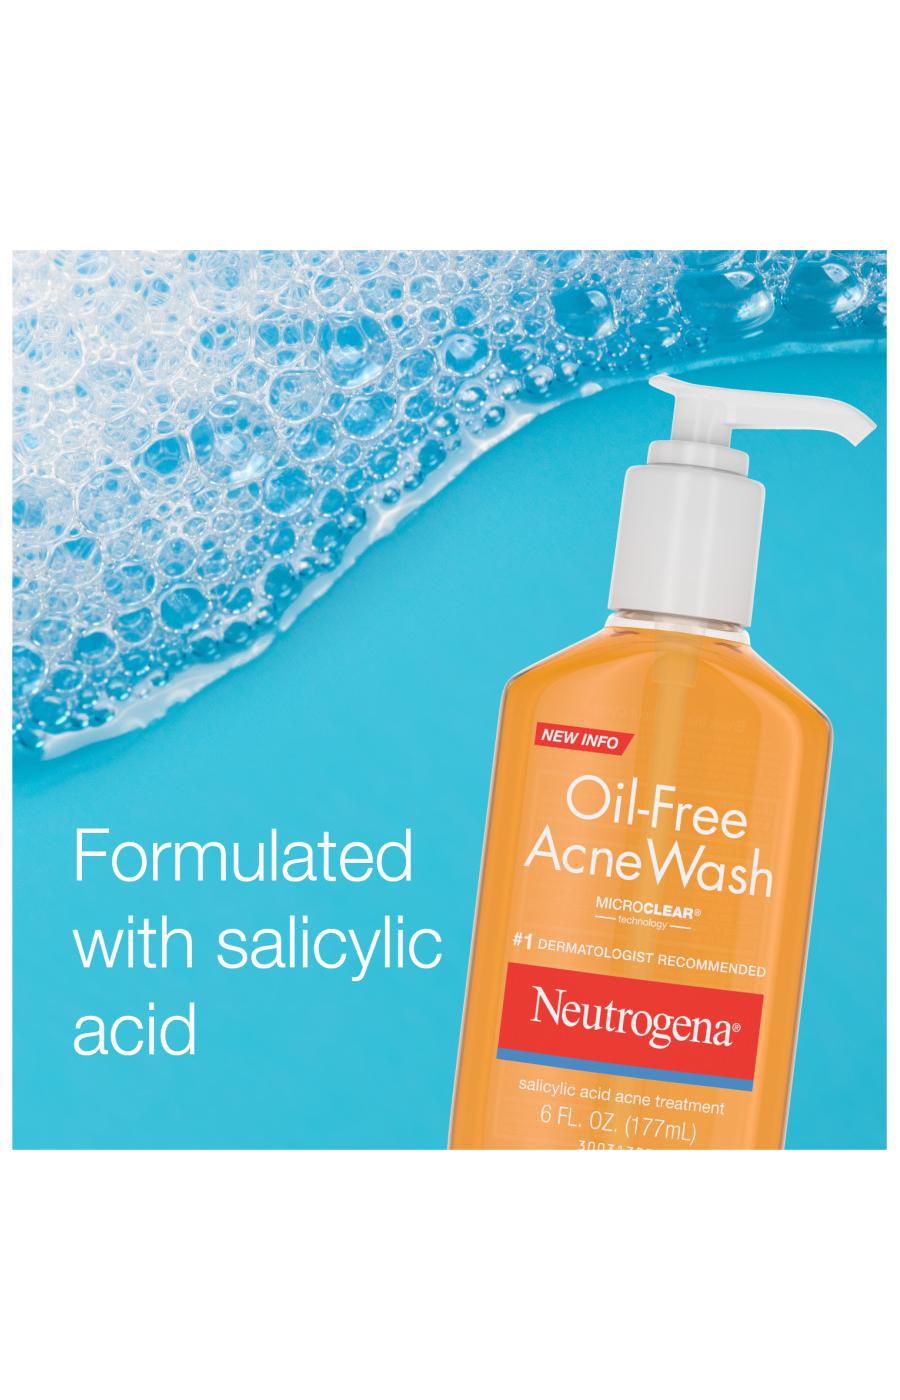 Neutrogena Oil-Free Acne Wash; image 5 of 6